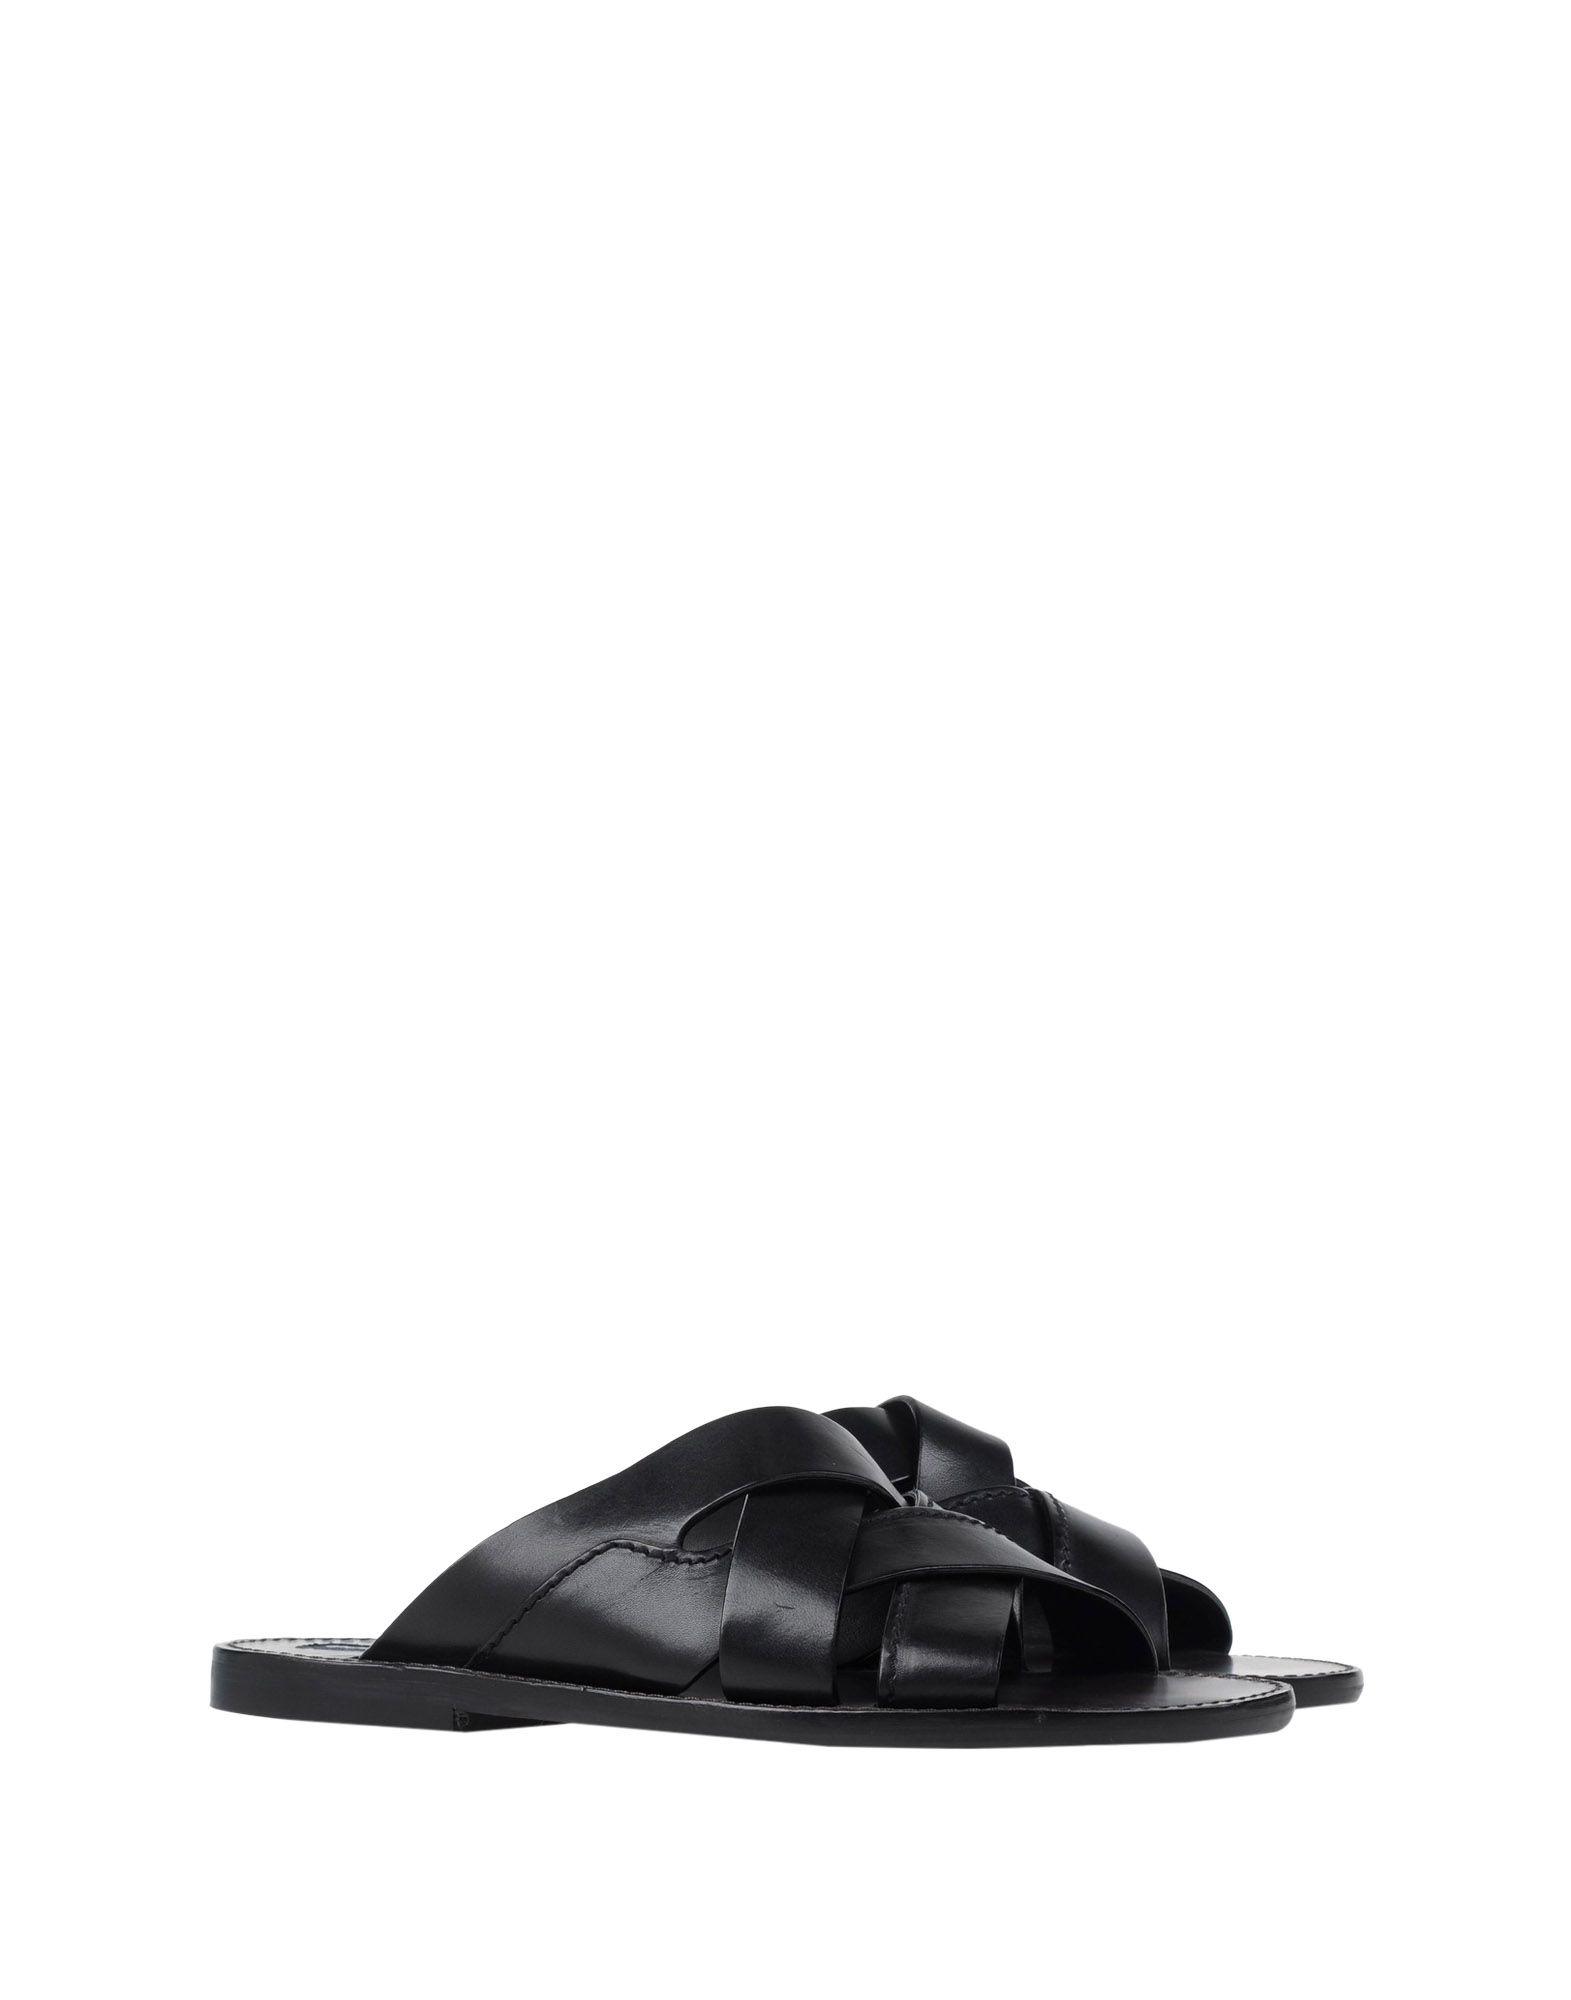 Lyst - Dolce & Gabbana Sandals in Black